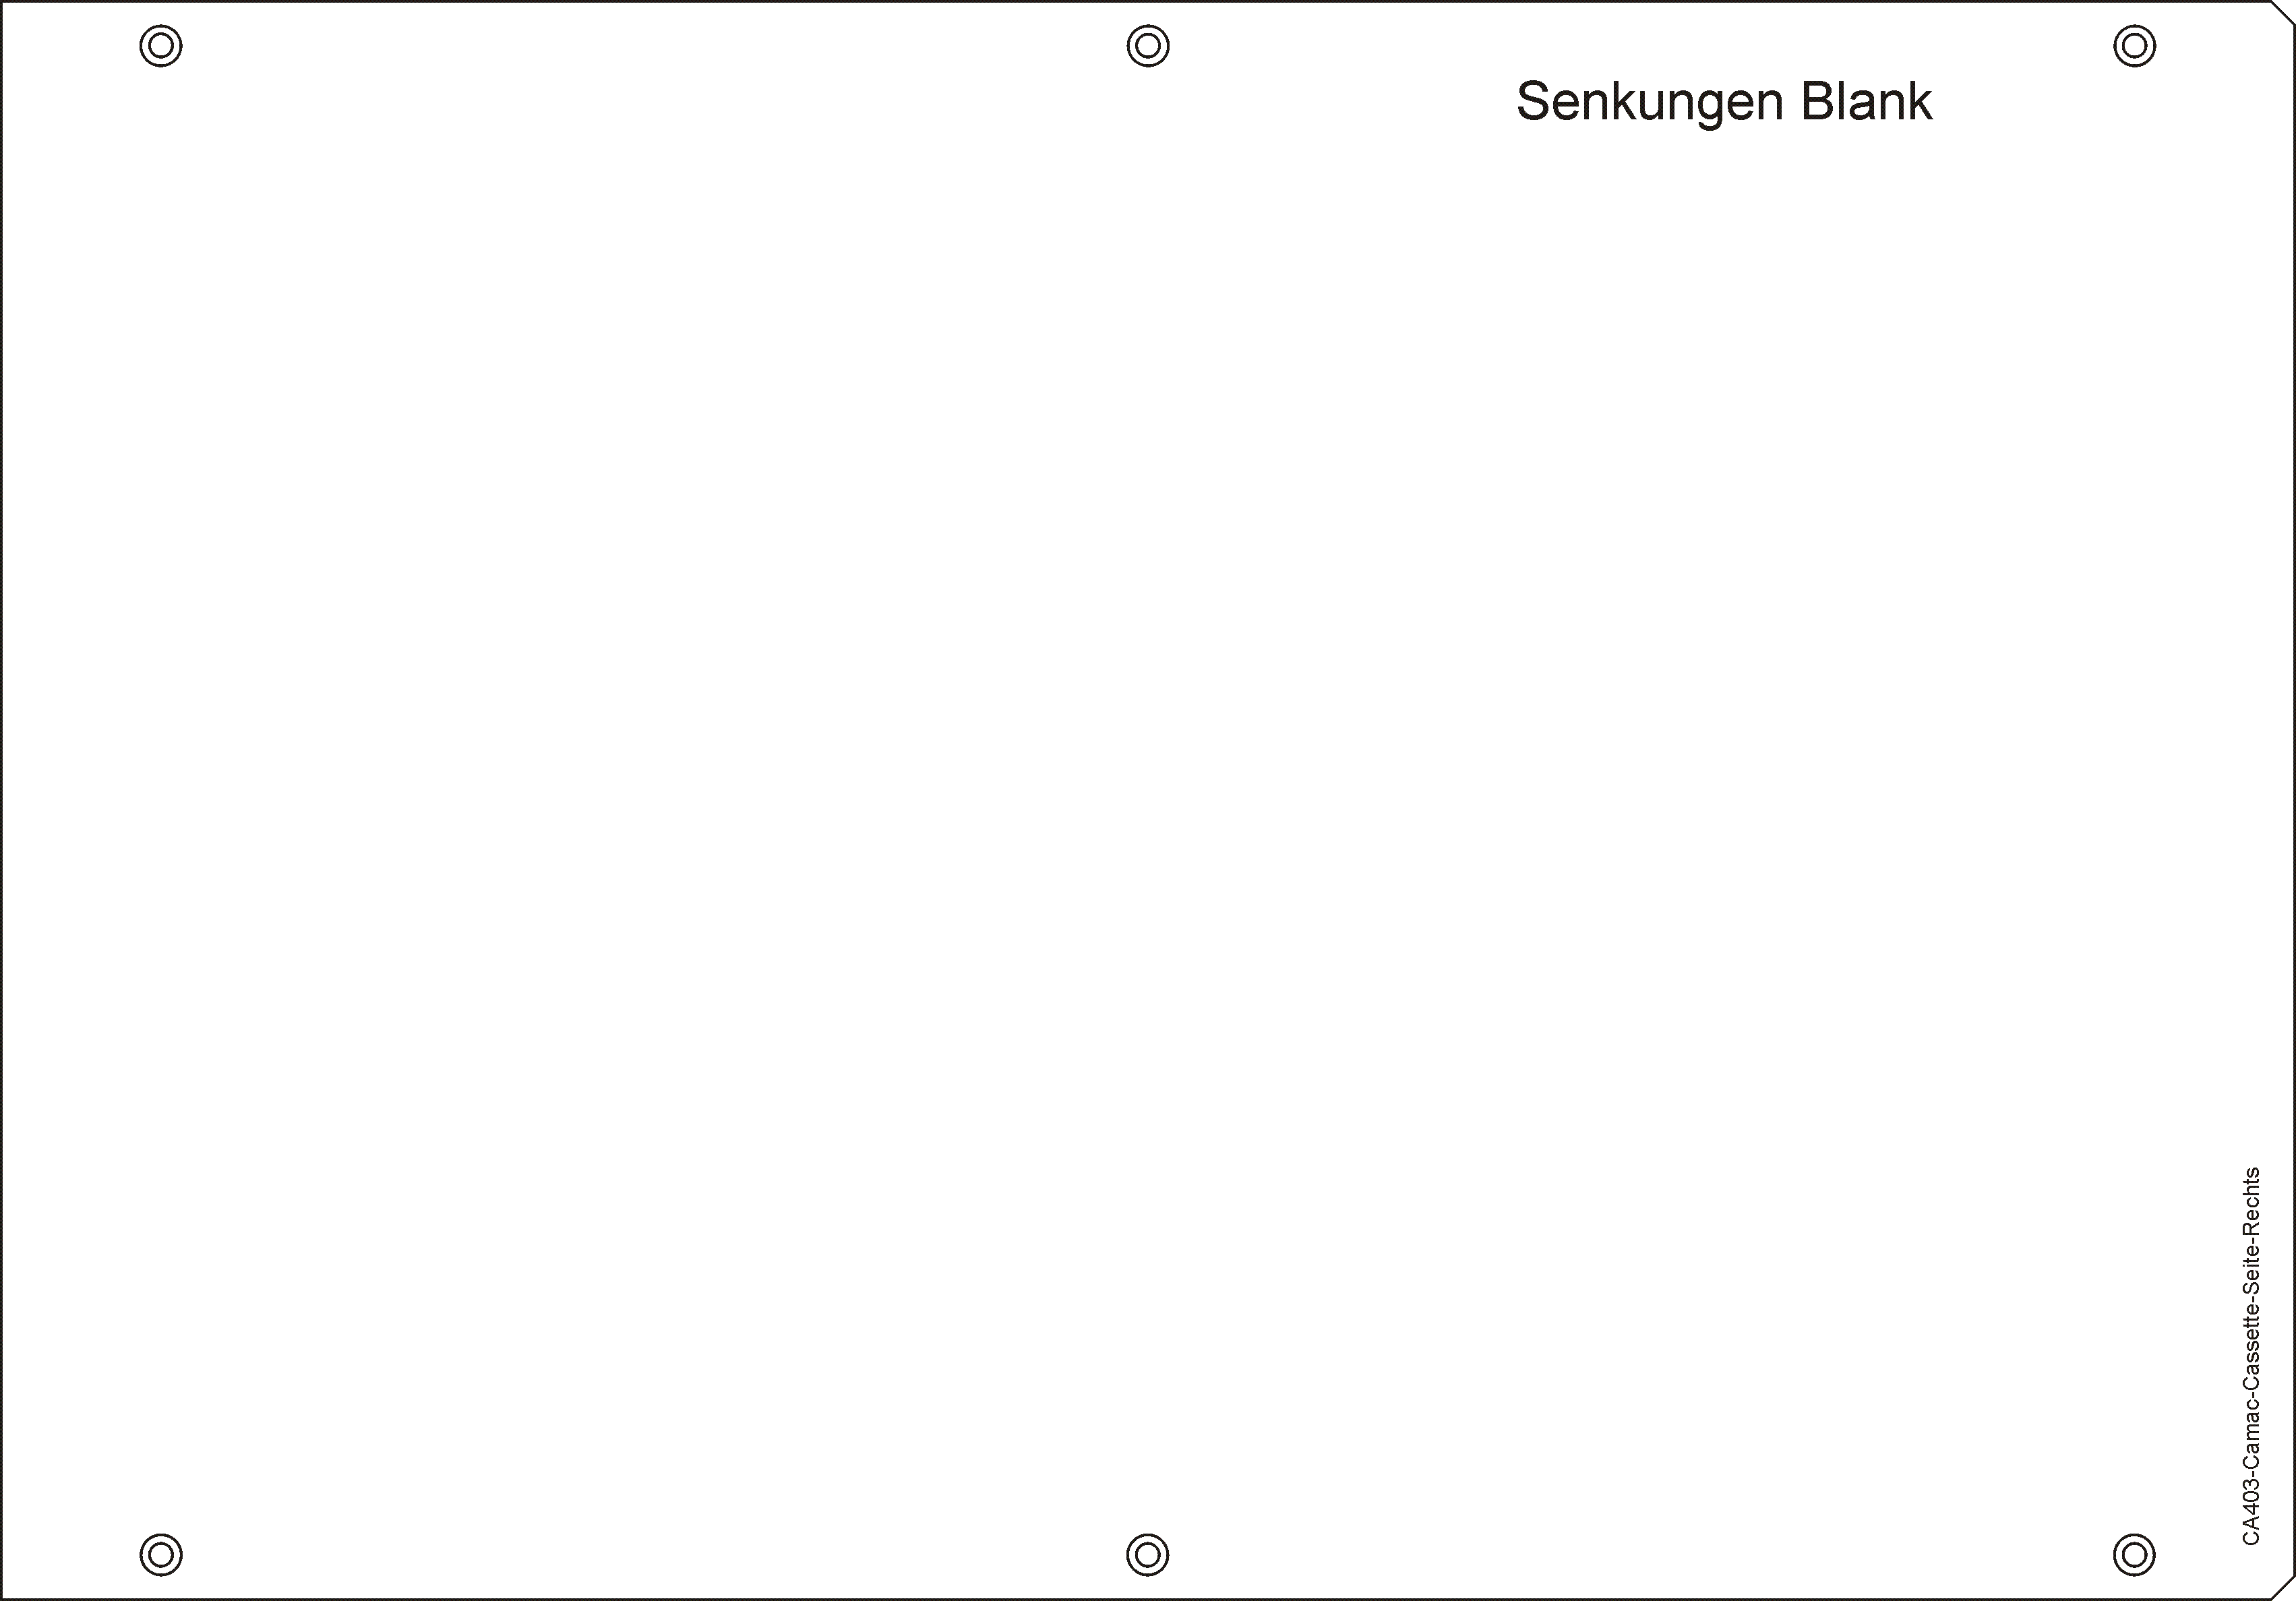 DESK-GmbH-CA403-CAMAC-Cassette-Seite-rechts